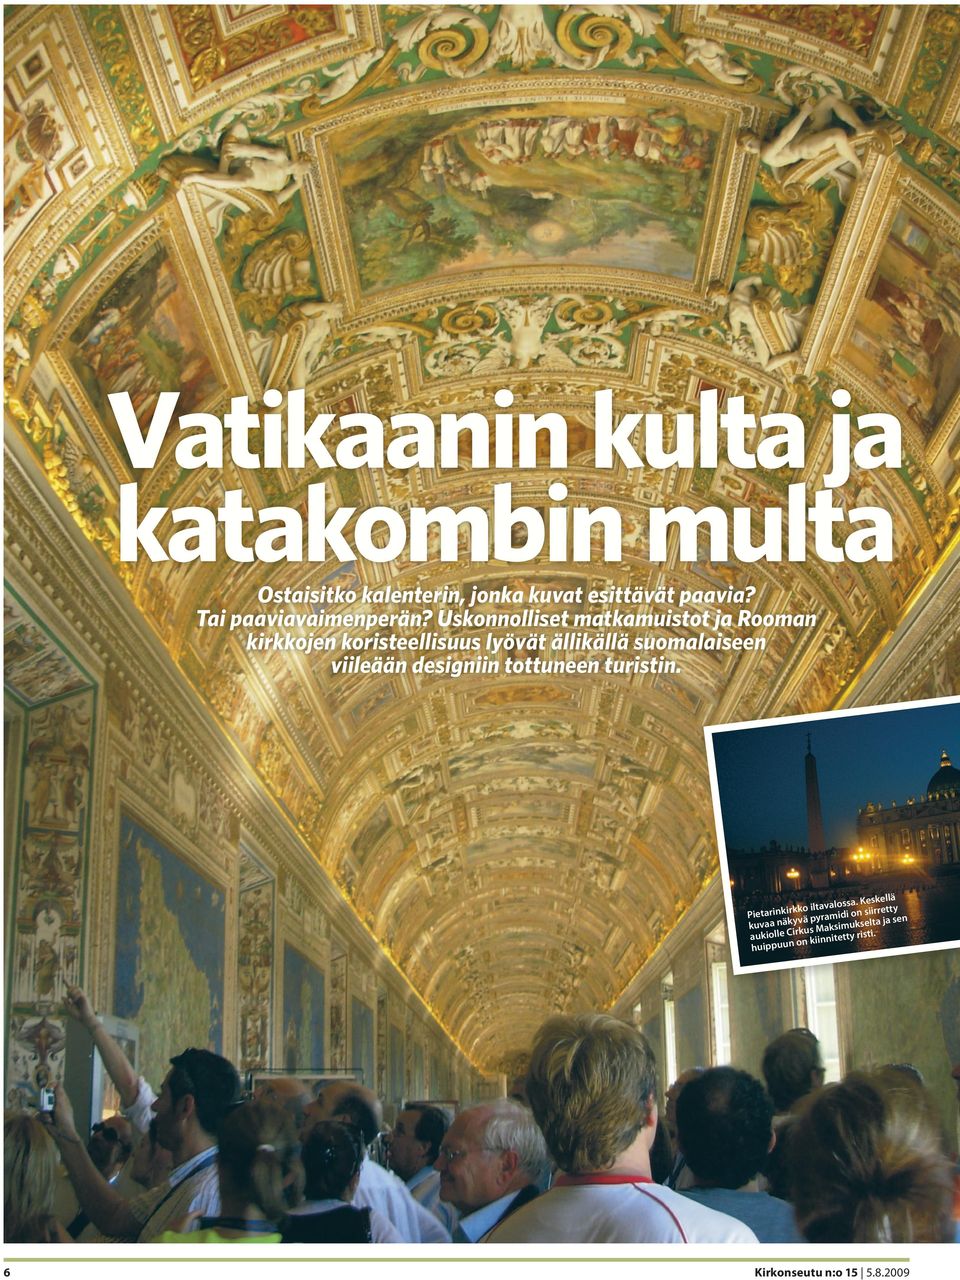 Uskonnolliset matkamuistot ja Rooman kirkkojen koristeellisuus lyövät ällikällä suomalaiseen viileään